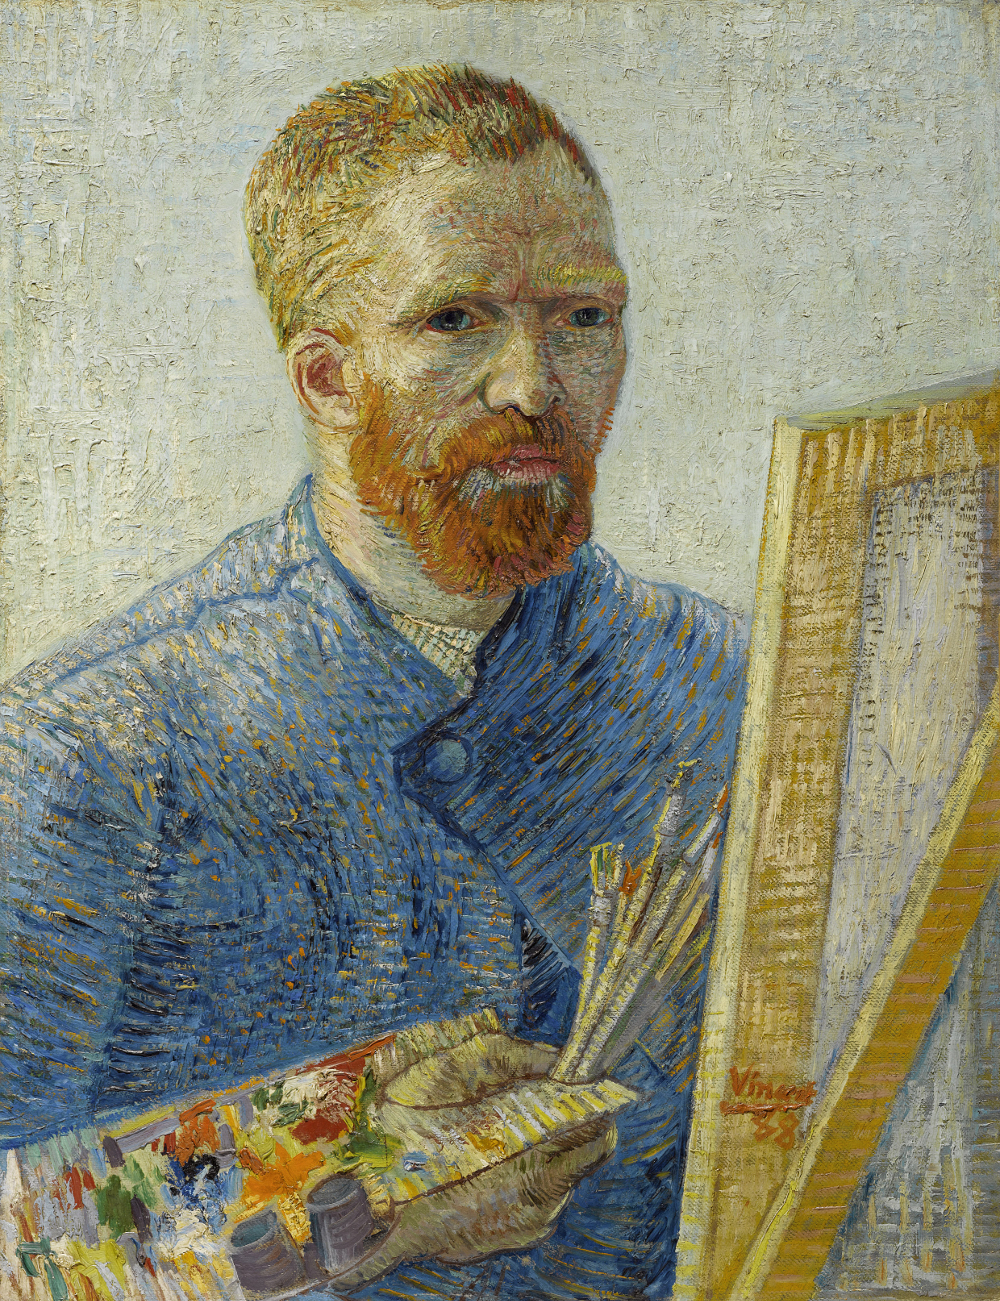 Jaeger-LeCoultre Reverso Vincent van Gogh | Timeandwatches.pl